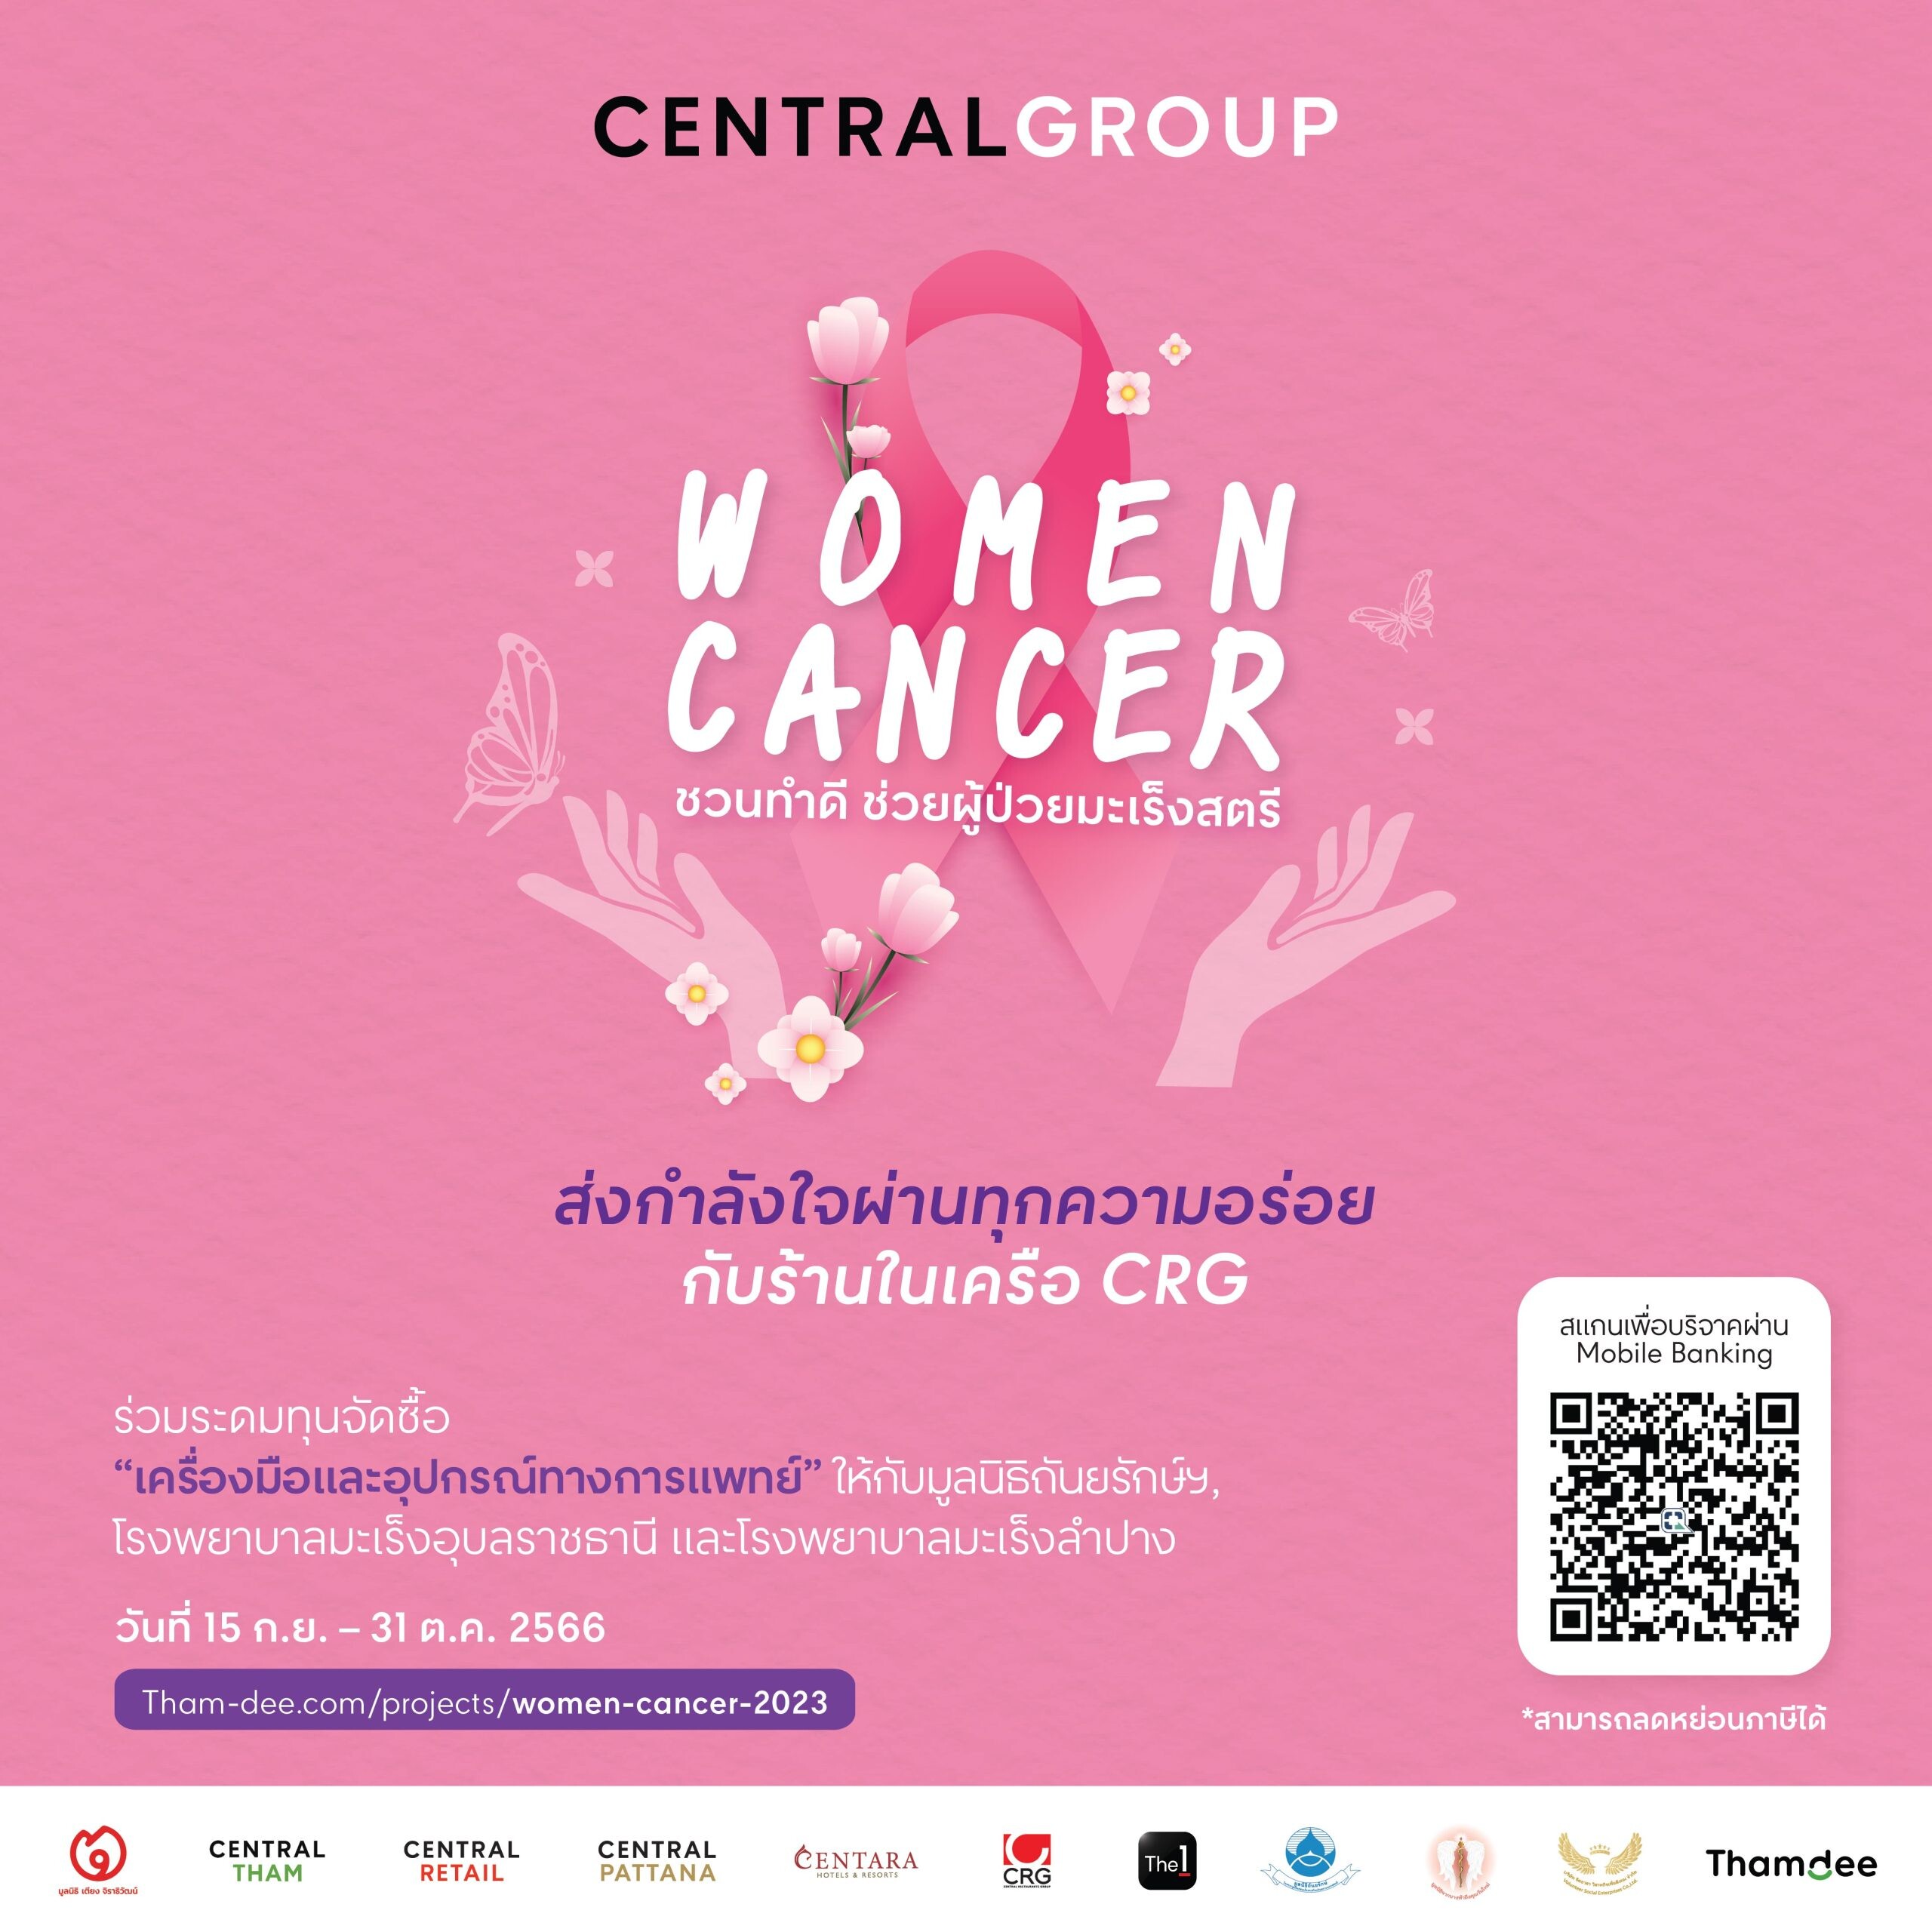 ซีอาร์จี ร่วมกับ 10 ร้านอาหารในเครือ ชวนคุณอิ่มอร่อยพร้อมร่วมทำบุญ กับโครงการ Women Cancer 2023 โดยกลุ่มเซ็นทรัล เพื่อช่วยเหลือผู้ป่วยมะเร็งสตรี